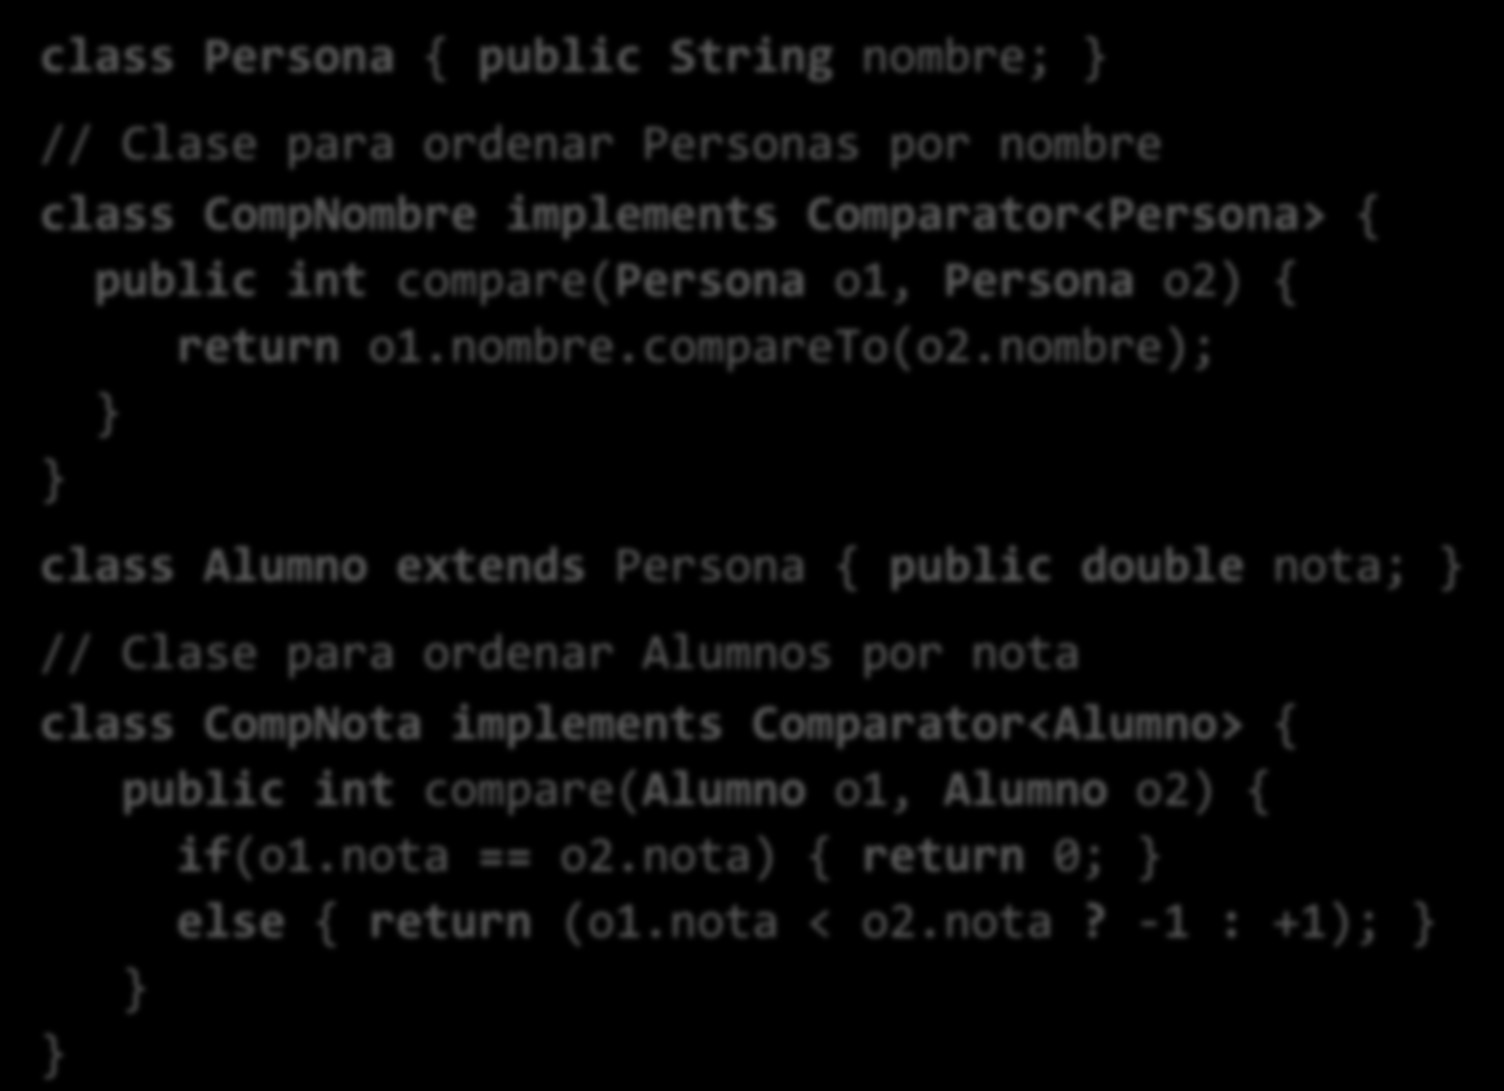 Ejemplo de uso de sort (I) class Persona { public String nombre; // Clase para ordenar Personas por nombre class CompNombre implements Comparator<Persona> { public int compare(persona o1, Persona o2)